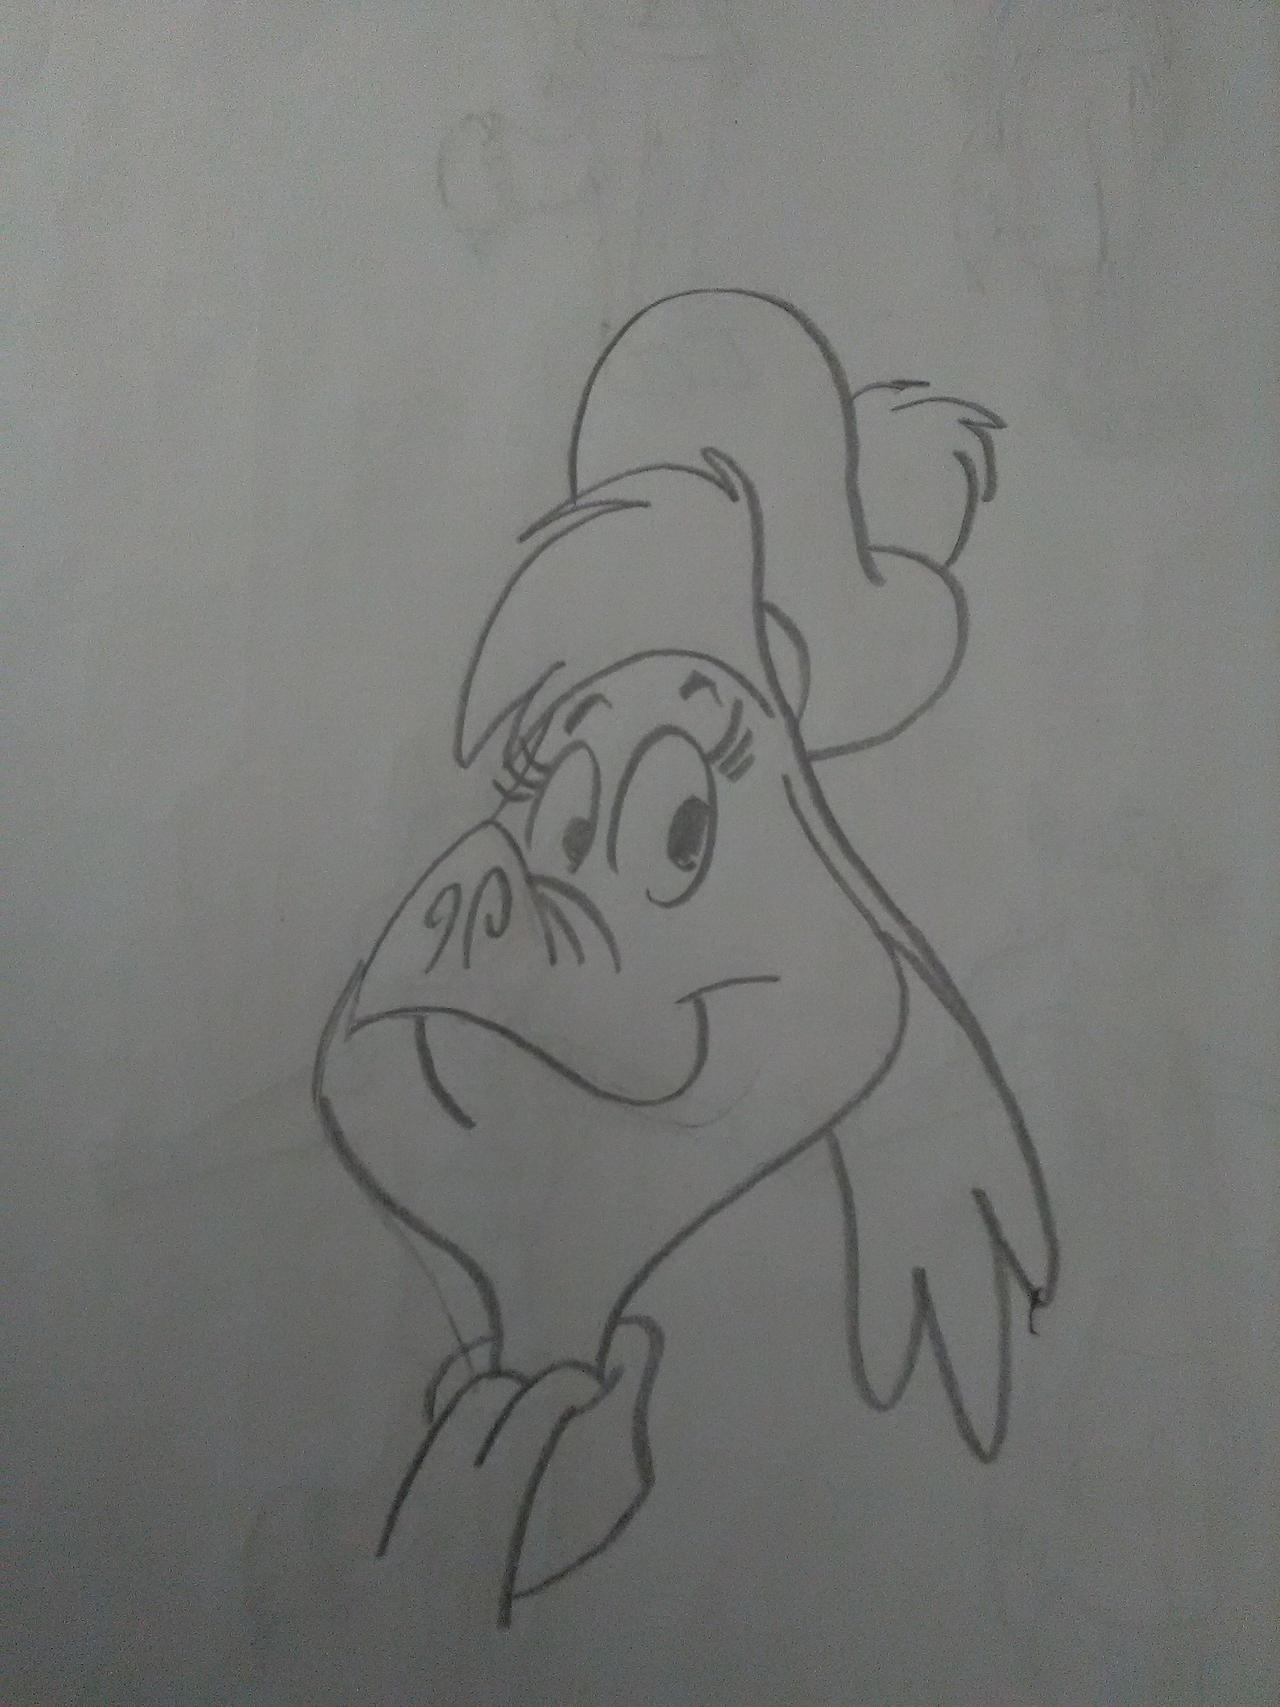 Nessie sketch by princebluemoon3 on DeviantArt